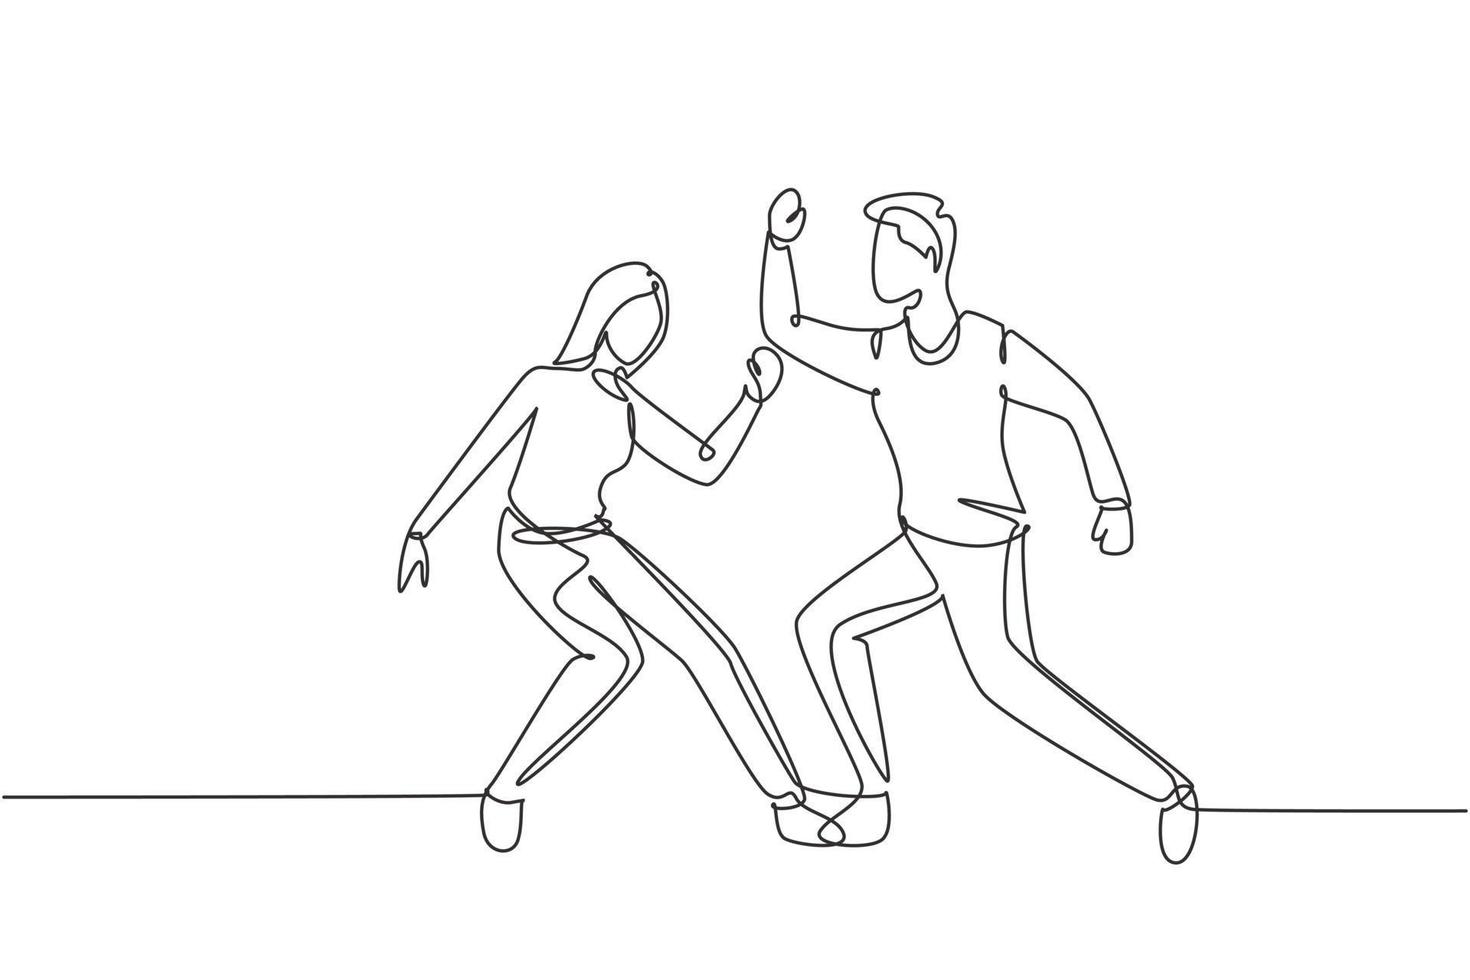 dibujo continuo de una línea hombre y mujer bailando lindy hop o swing. personajes masculinos y femeninos que bailan en la escuela o en una fiesta. estilo de vida divertido. Ilustración gráfica de vector de diseño de dibujo de una sola línea